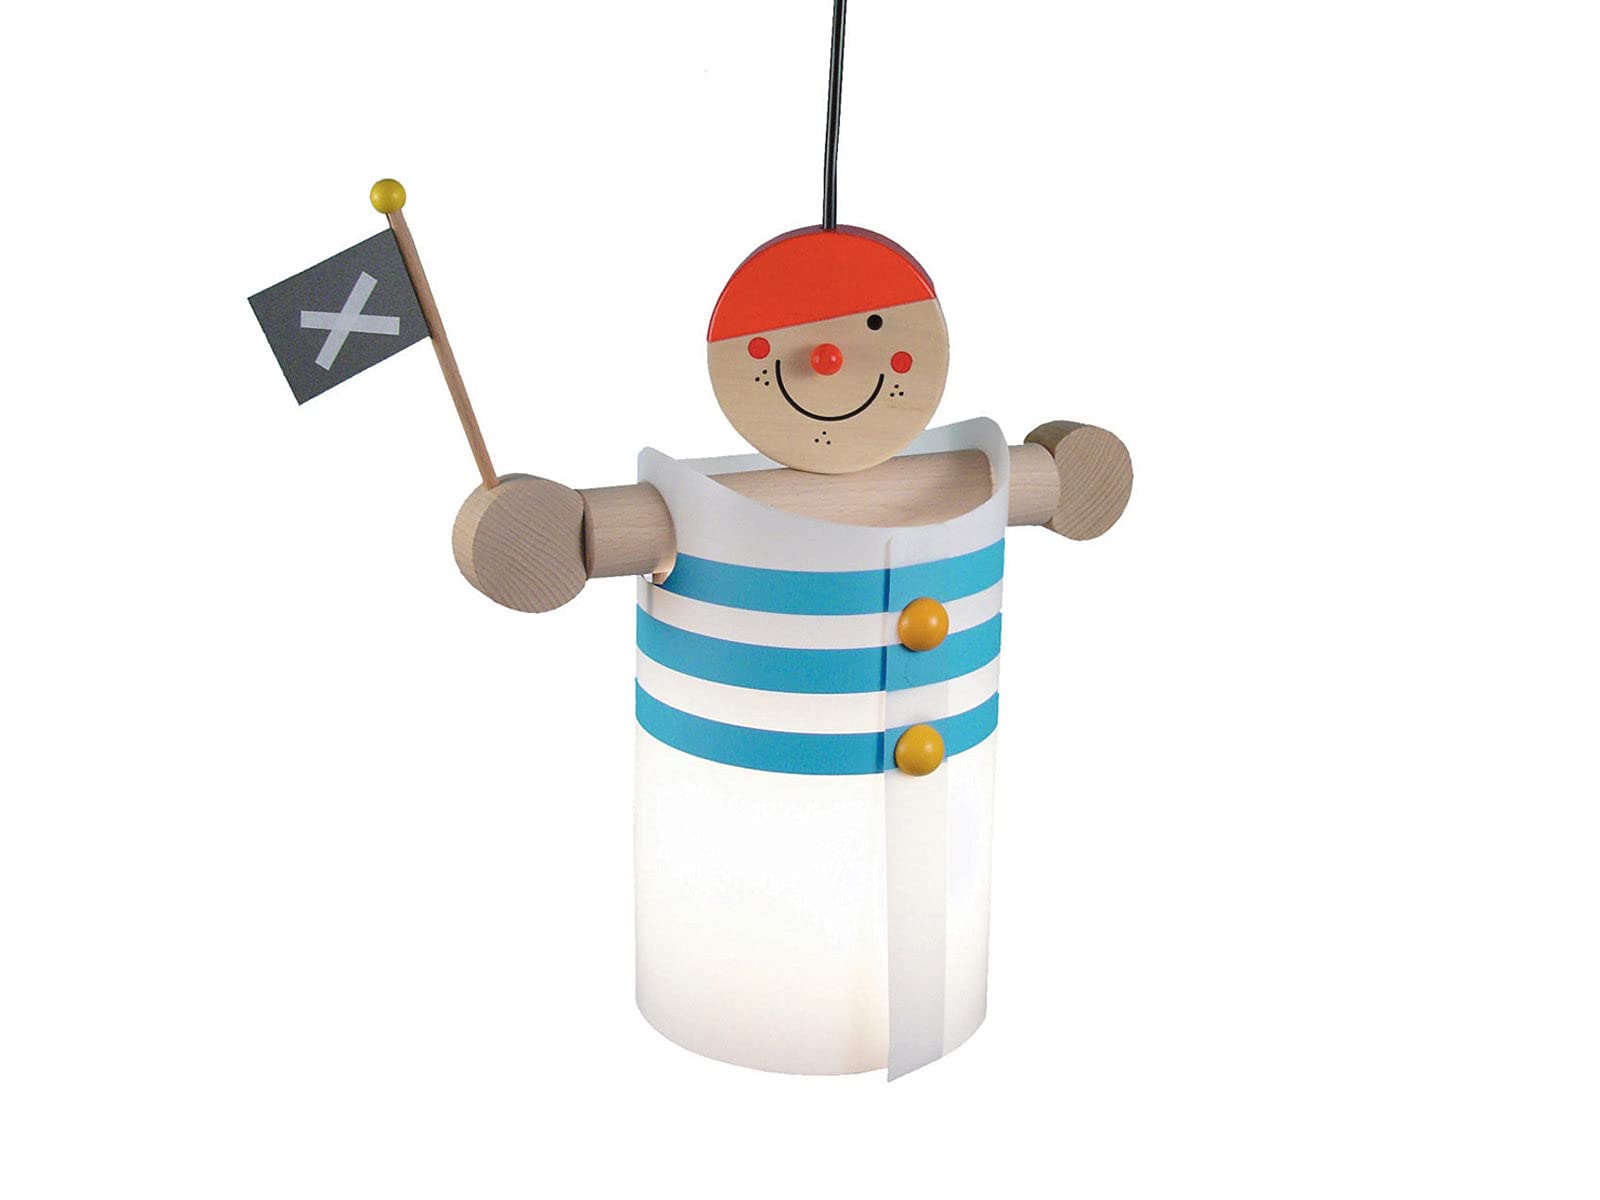 Süße LED Kinderzimmerlampe der niedliche LAMPENPIRAT bringt gute Laune und das Abenteuer in jedes Kinderzimmer!